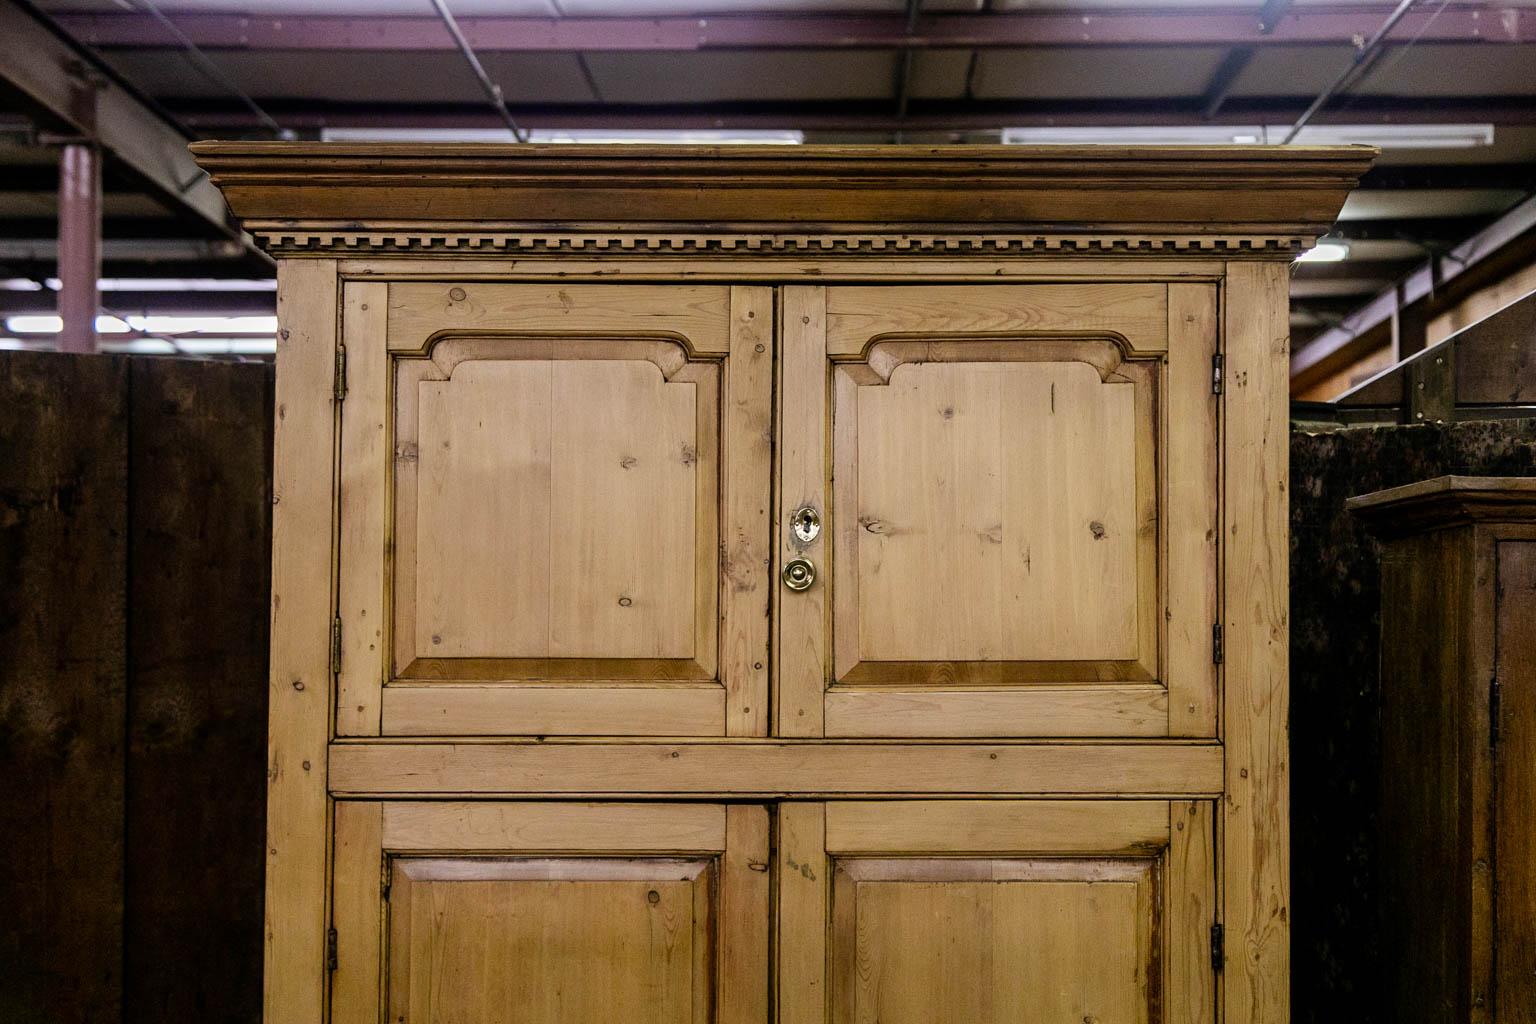 Cette armoire est construite avec des chevilles apparentes. Les portes ont des panneaux en relief encadrés par des montants en forme. La moulure de la couronne présente un travail de dentelure sculpté. Les portes sont encadrées par des moulures sur